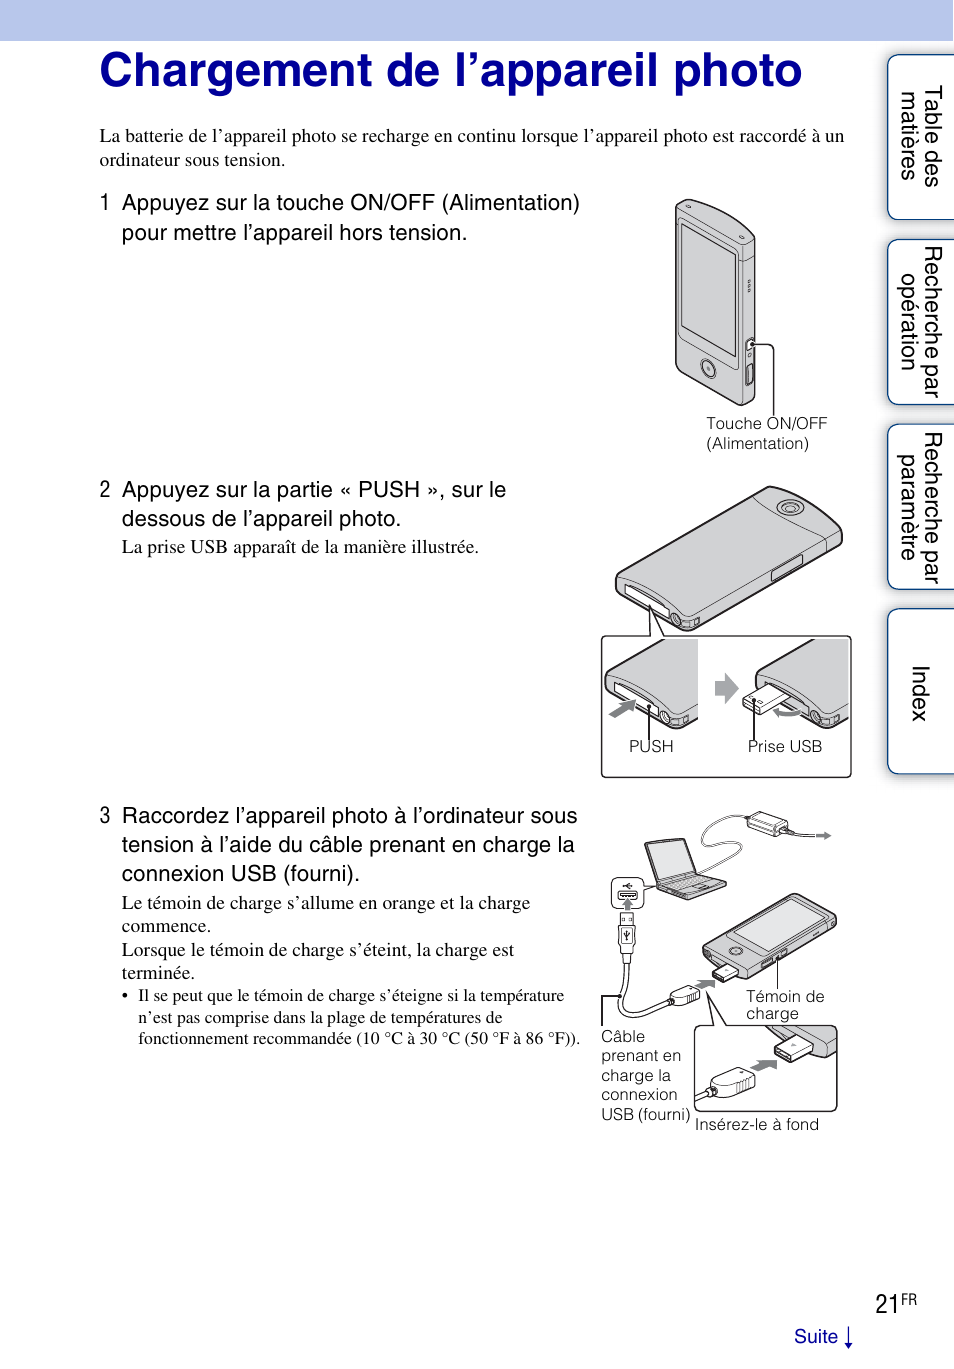 Chargement de l’appareil photo | Sony bloggie MHS-TS20 Manuel d'utilisation | Page 21 / 75